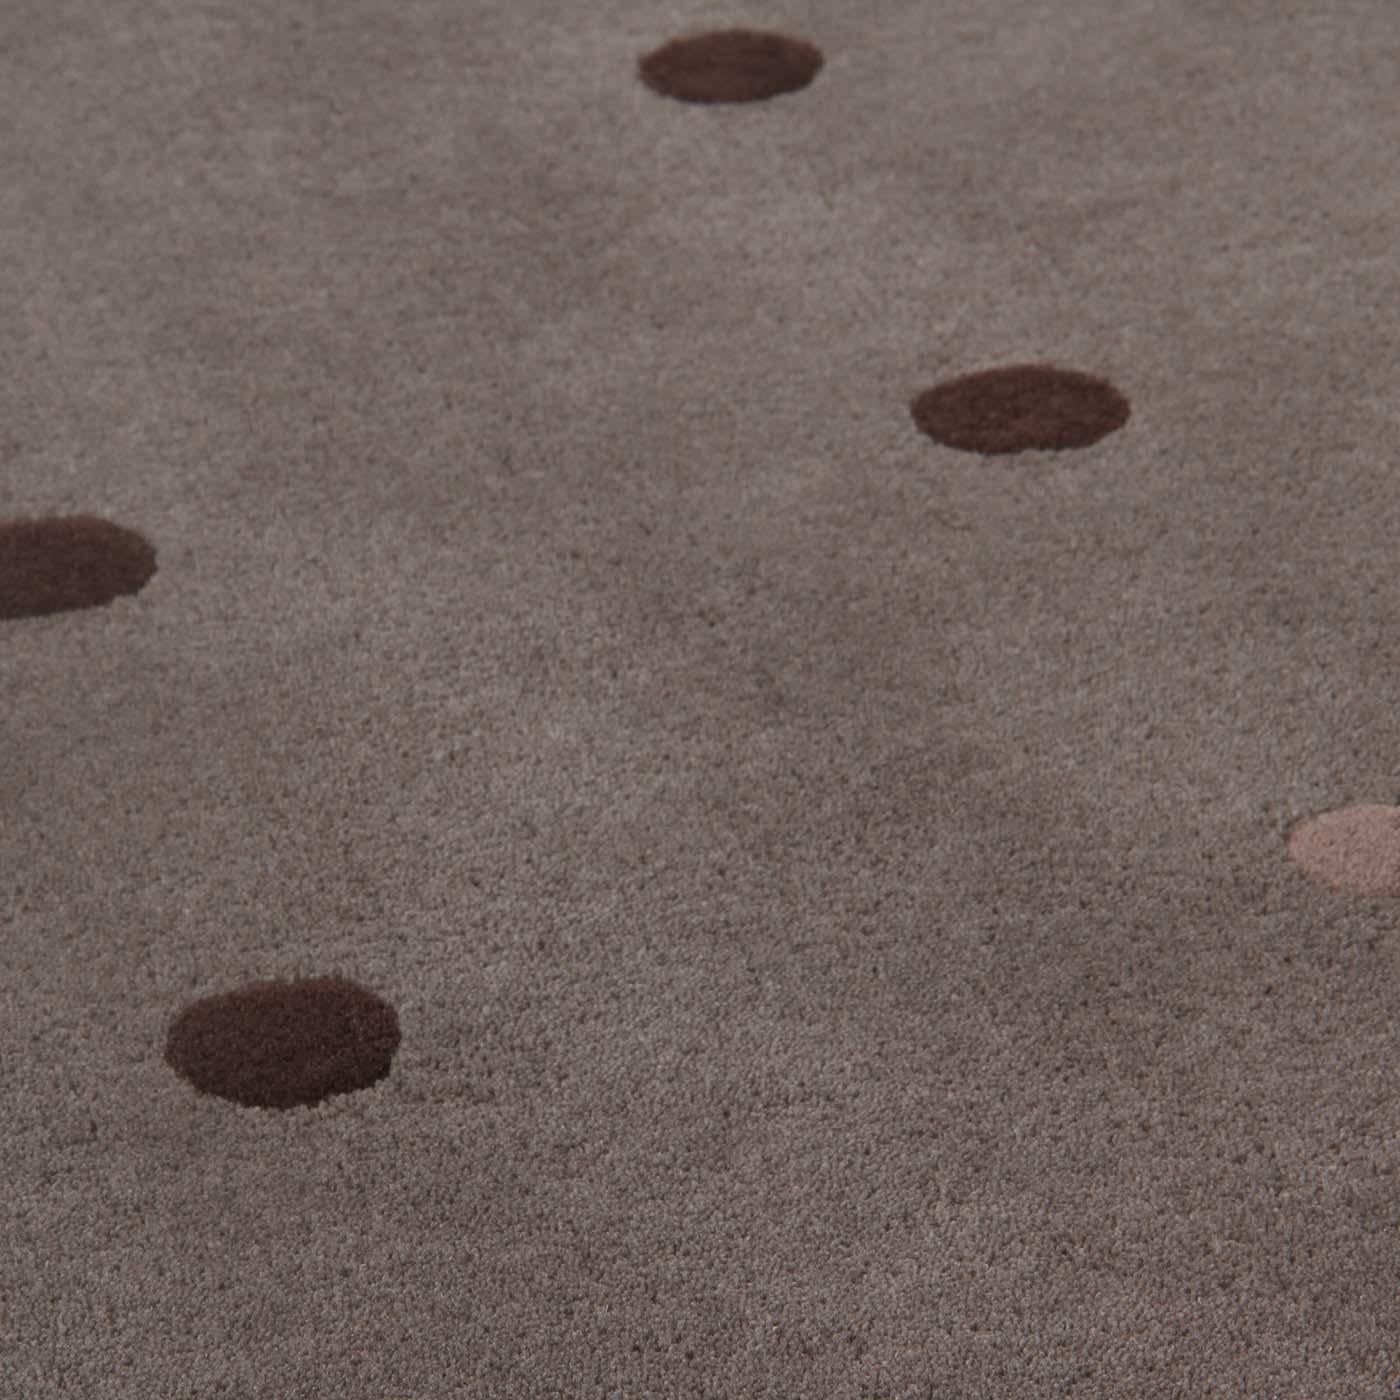 Ein verspieltes Polka-Dot-Motiv findet sich auf dem Bubbles-Teppich, ein Entwurf des modernen und genialen Designers Joe Colombo. Bubbles entstand aus dem Grafikdesign-Projekt von Joe Colombo aus dem Jahr 1968, ähnlich wie die Tischleuchte Bolle aus